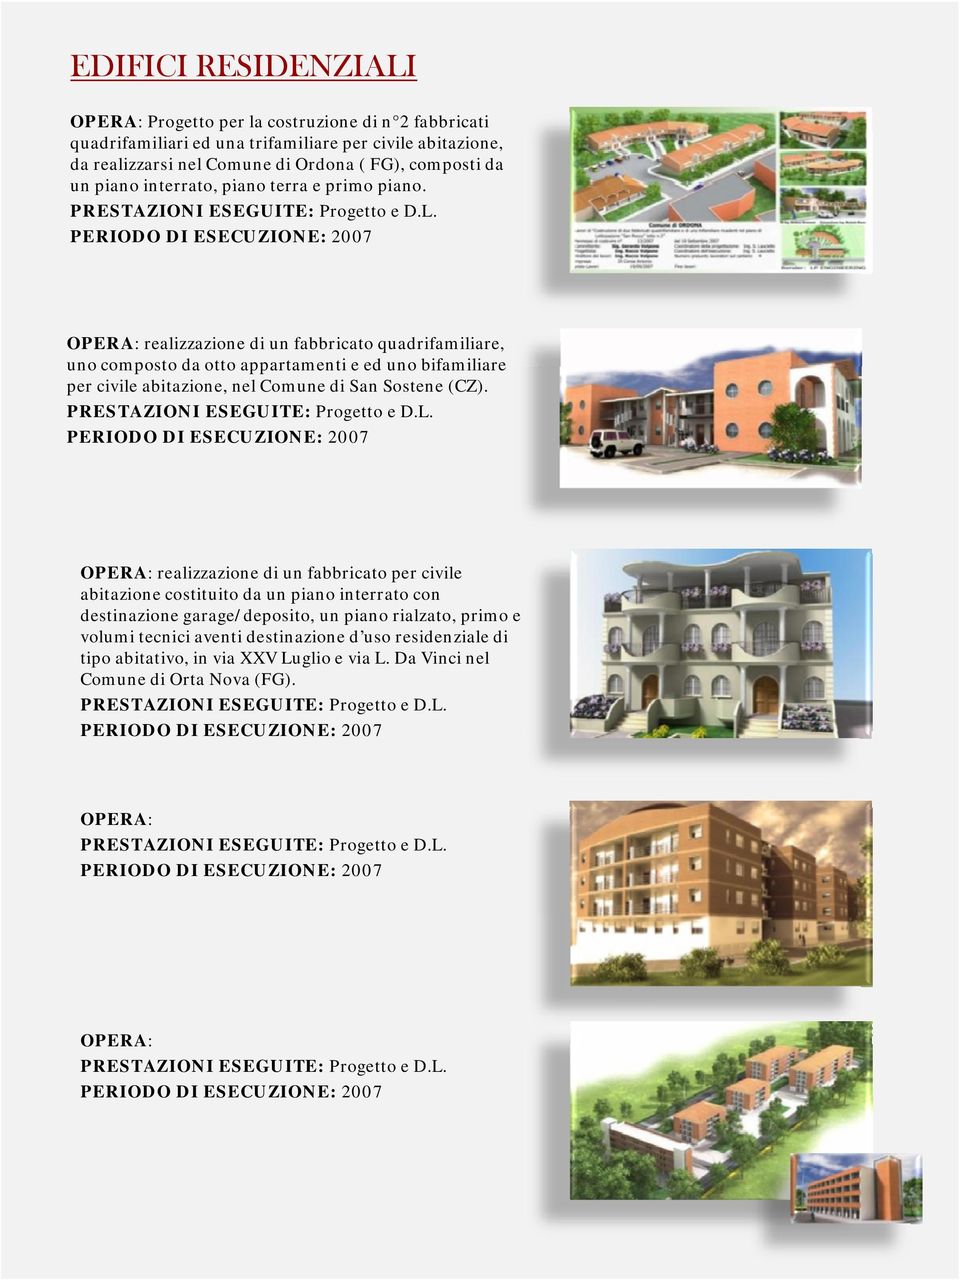 OPERA: realizzazione di un fabbricato quadrifamiliare, uno composto da otto appartamenti e ed uno bifamiliare per civile abitazione, nel Comune di San Sostene (CZ).